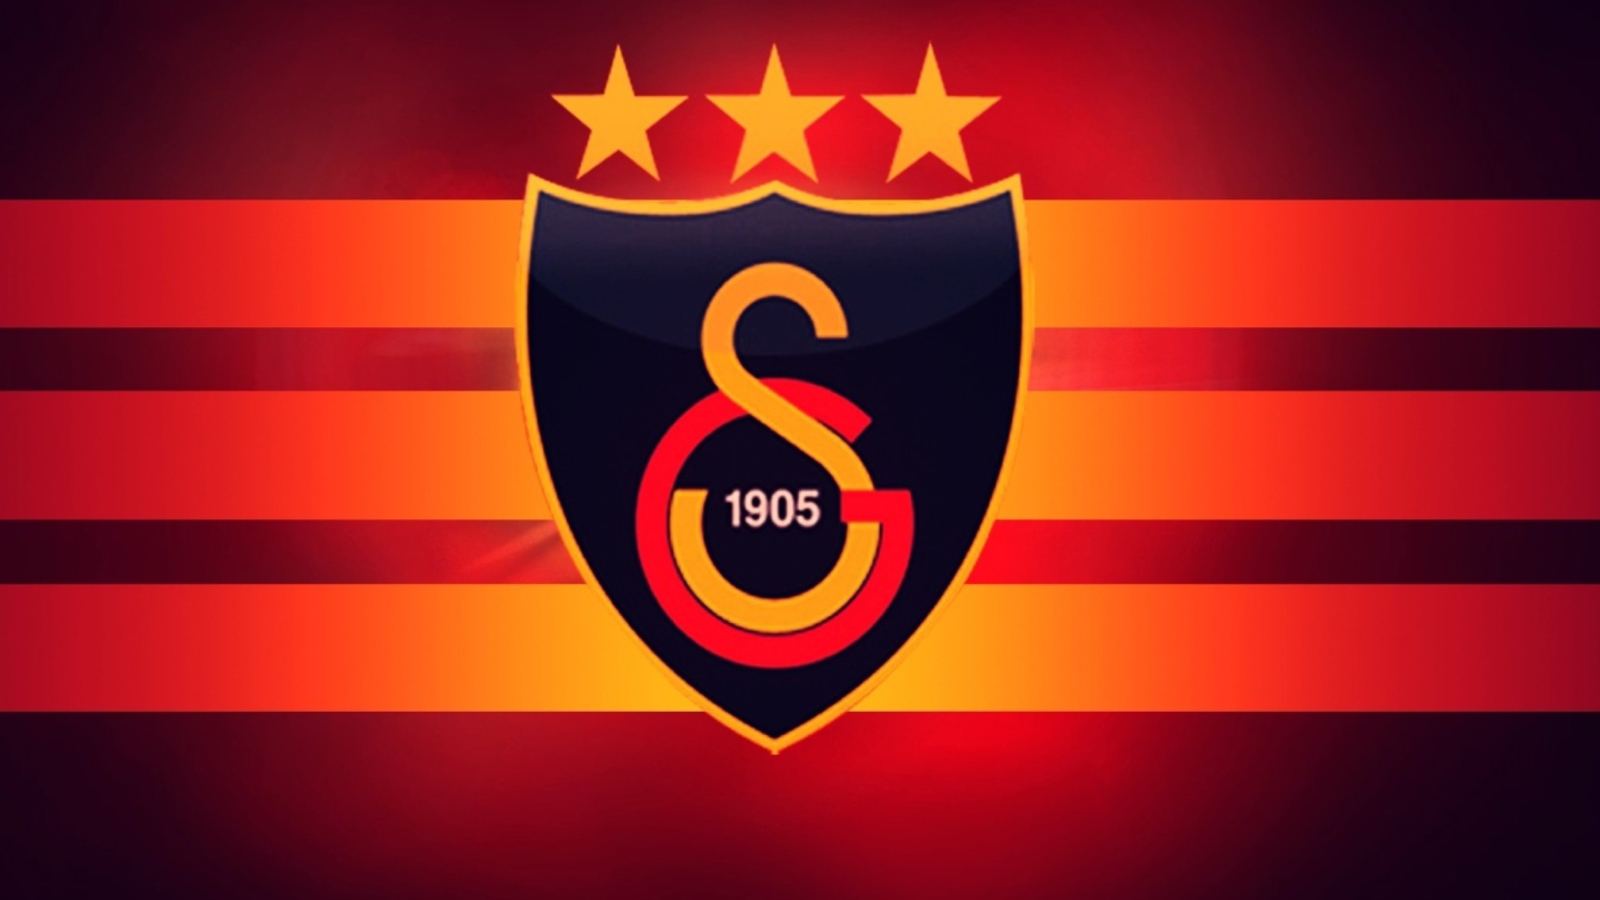 Обои Galatasaray S.K. 1600x900